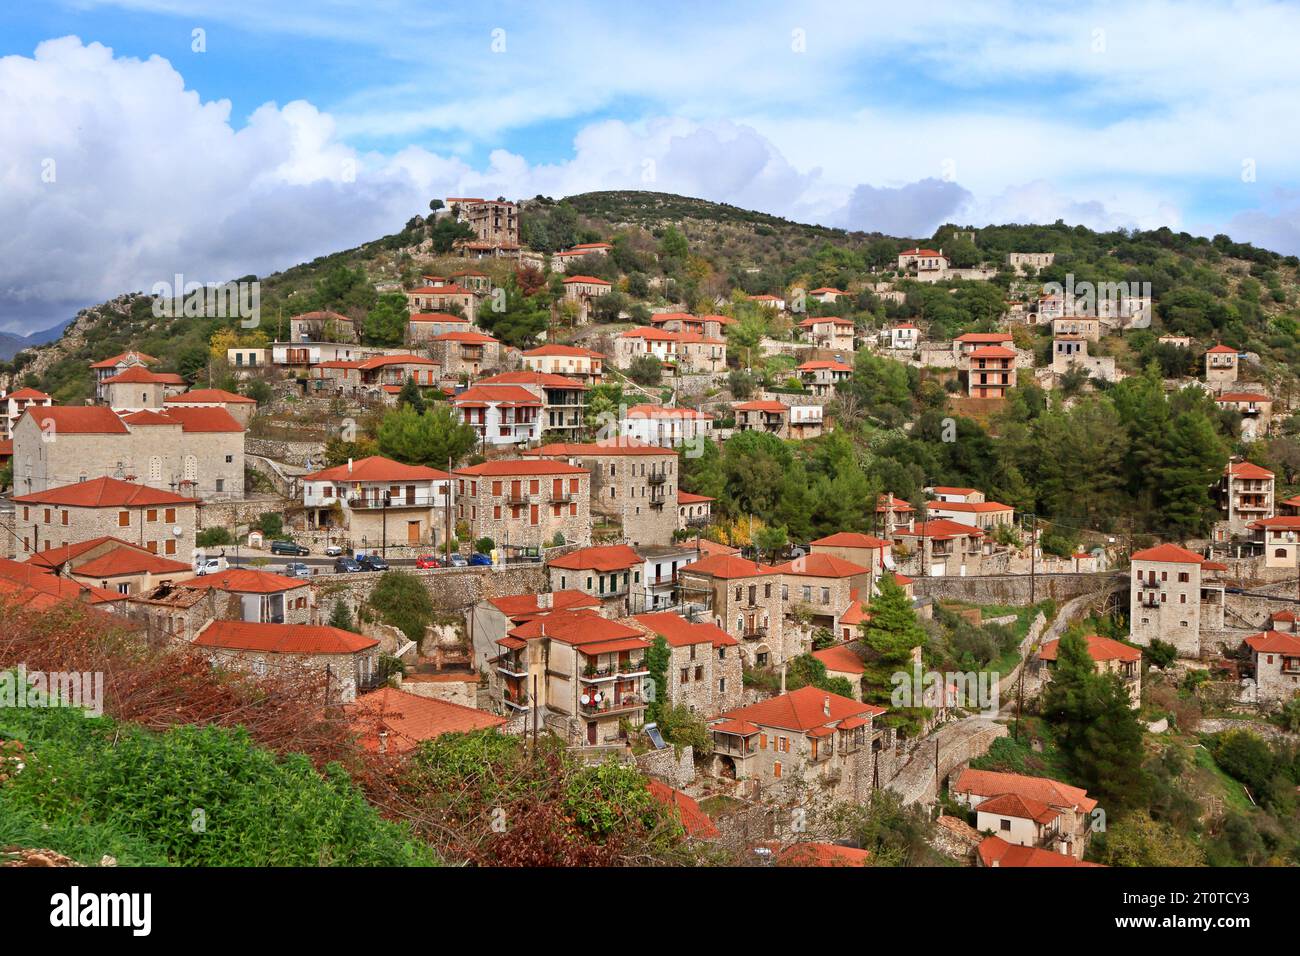 Villaggio di Karytaina, un bellissimo e tradizionale insediamento con vecchie case con tetti di tegole, nelle montagne della regione dell'Arcadia, nel Peloponneso, Grecia. Foto Stock